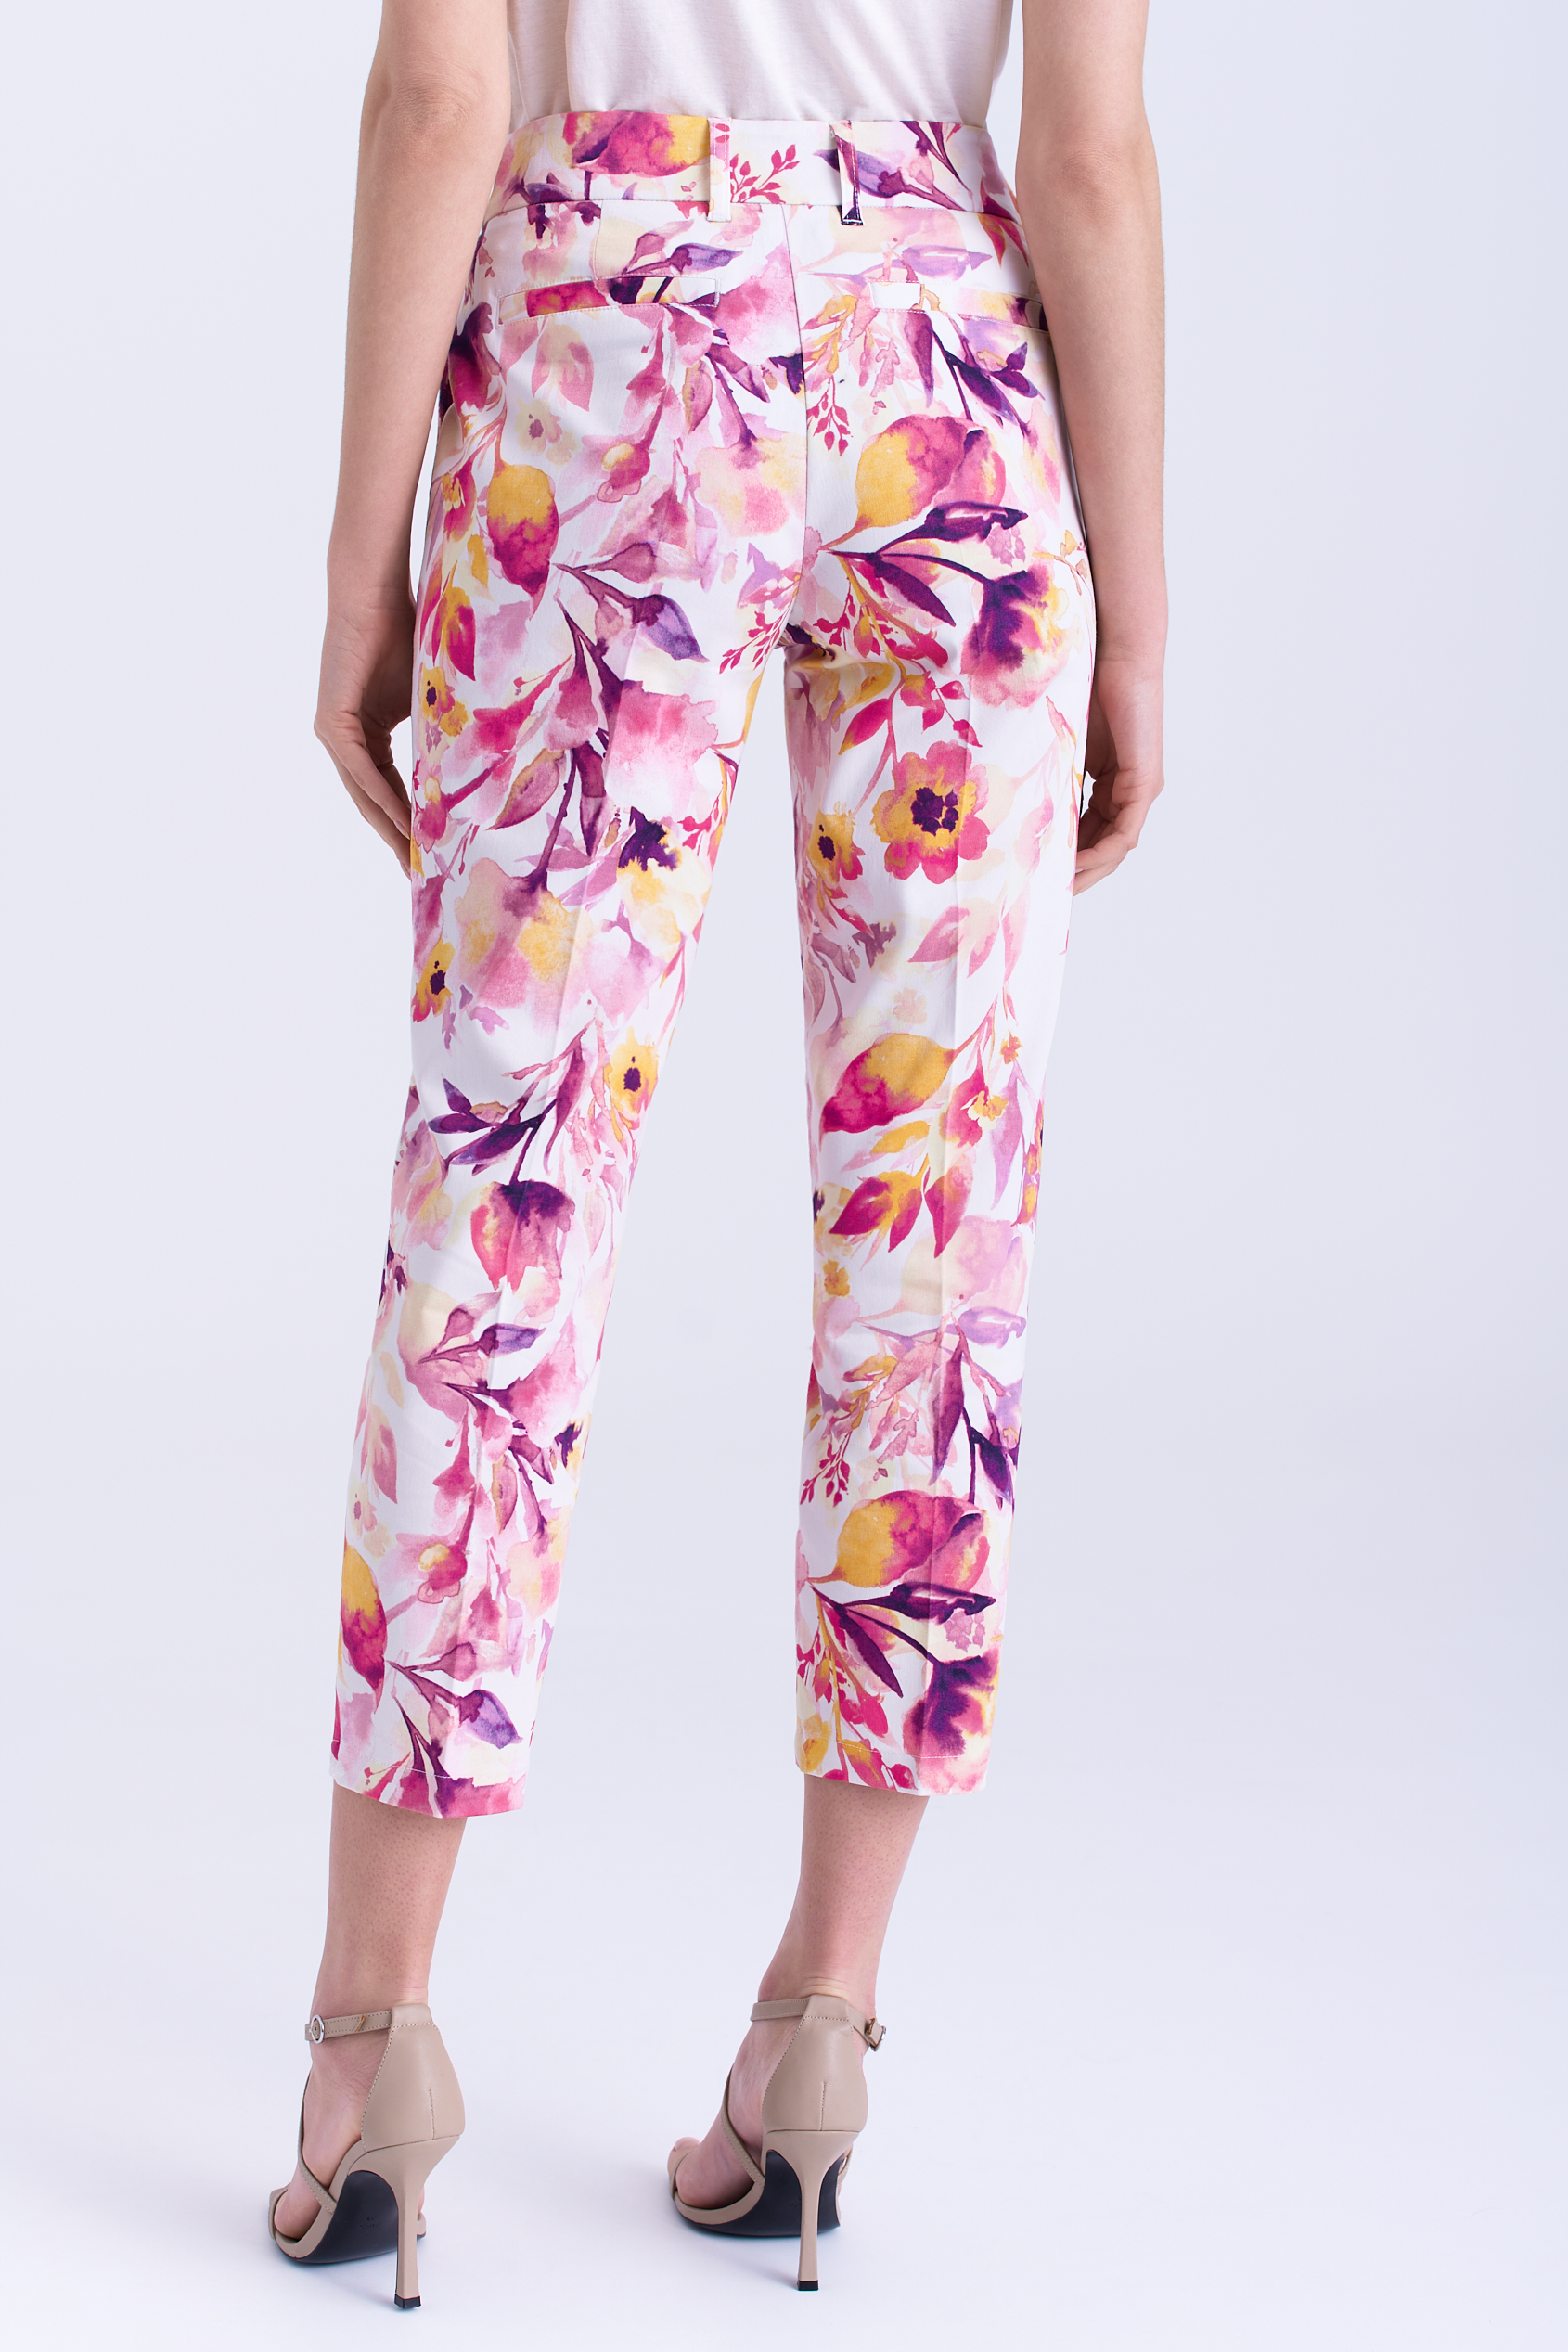 Spodnie z printem w wielobarwne kwiaty